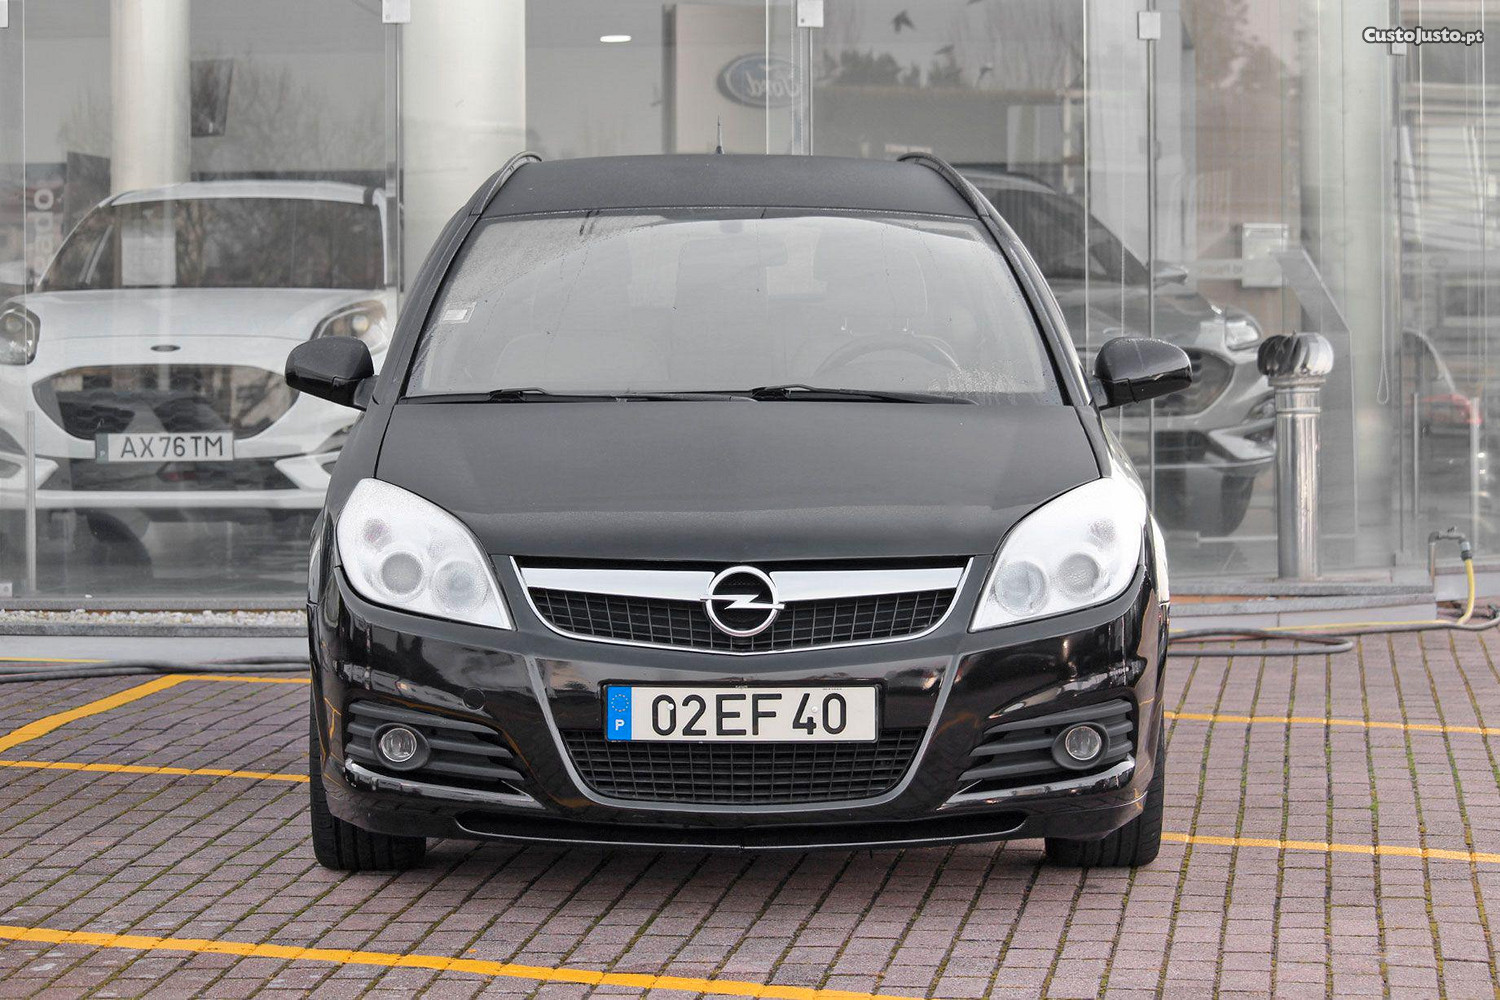 Opel Vectra 1.9 CDTi Executive